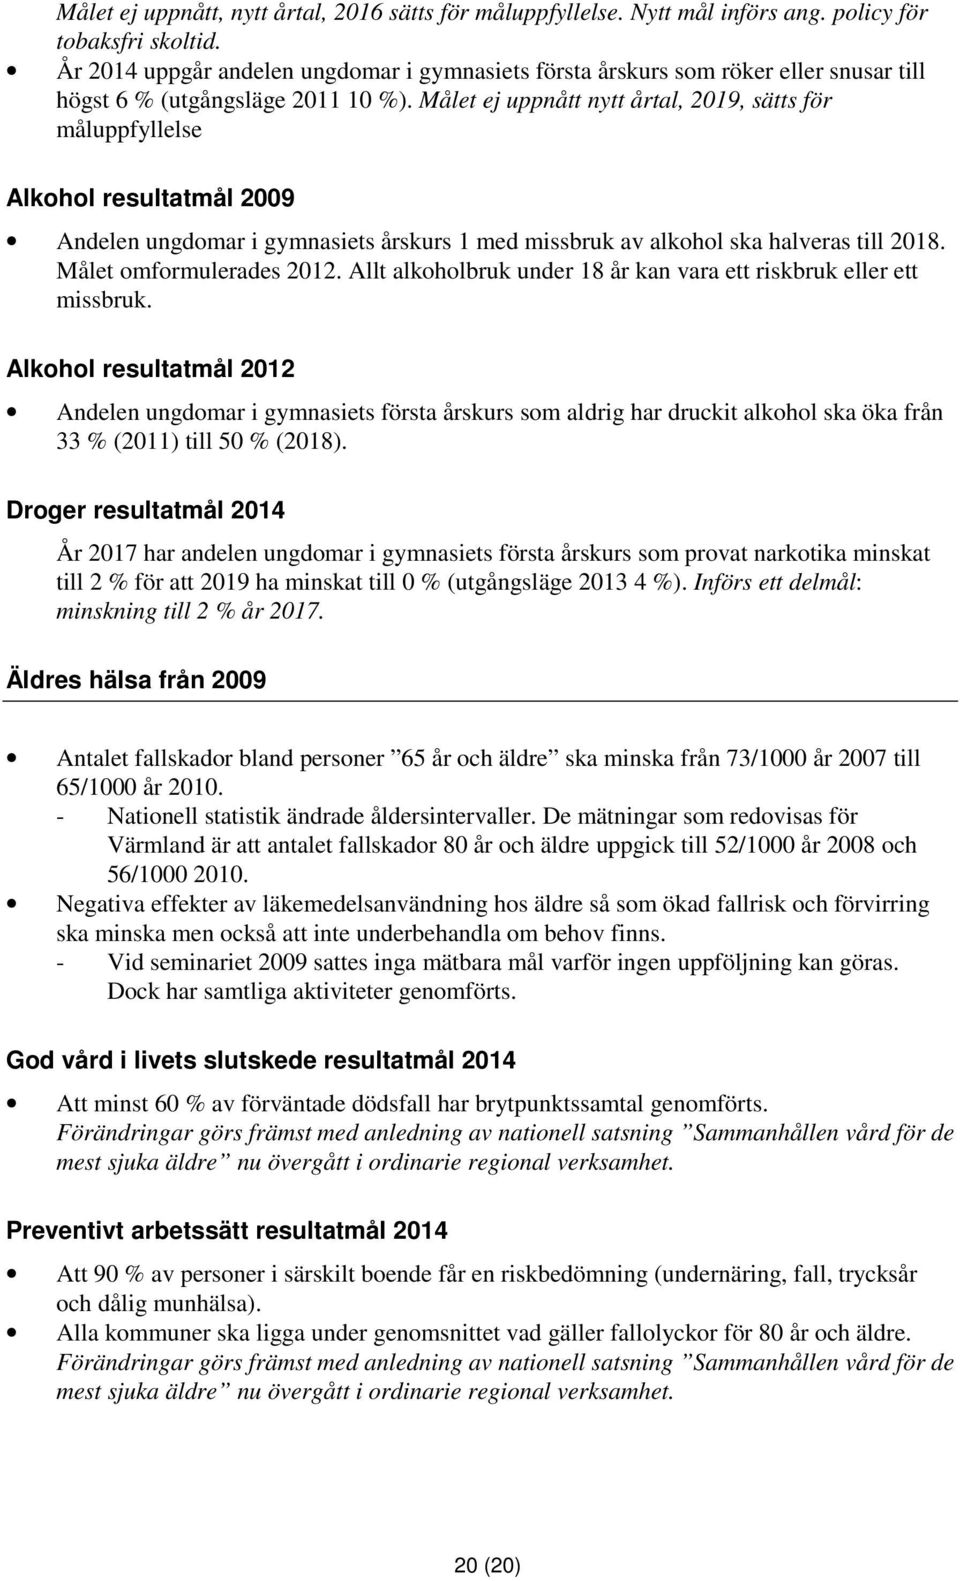 Målet ej uppnått nytt årtal, 2019, sätts för måluppfyllelse Alkohol resultatmål 2009 Andelen ungdomar i gymnasiets årskurs 1 med missbruk av alkohol ska halveras till 2018. Målet omformulerades 2012.